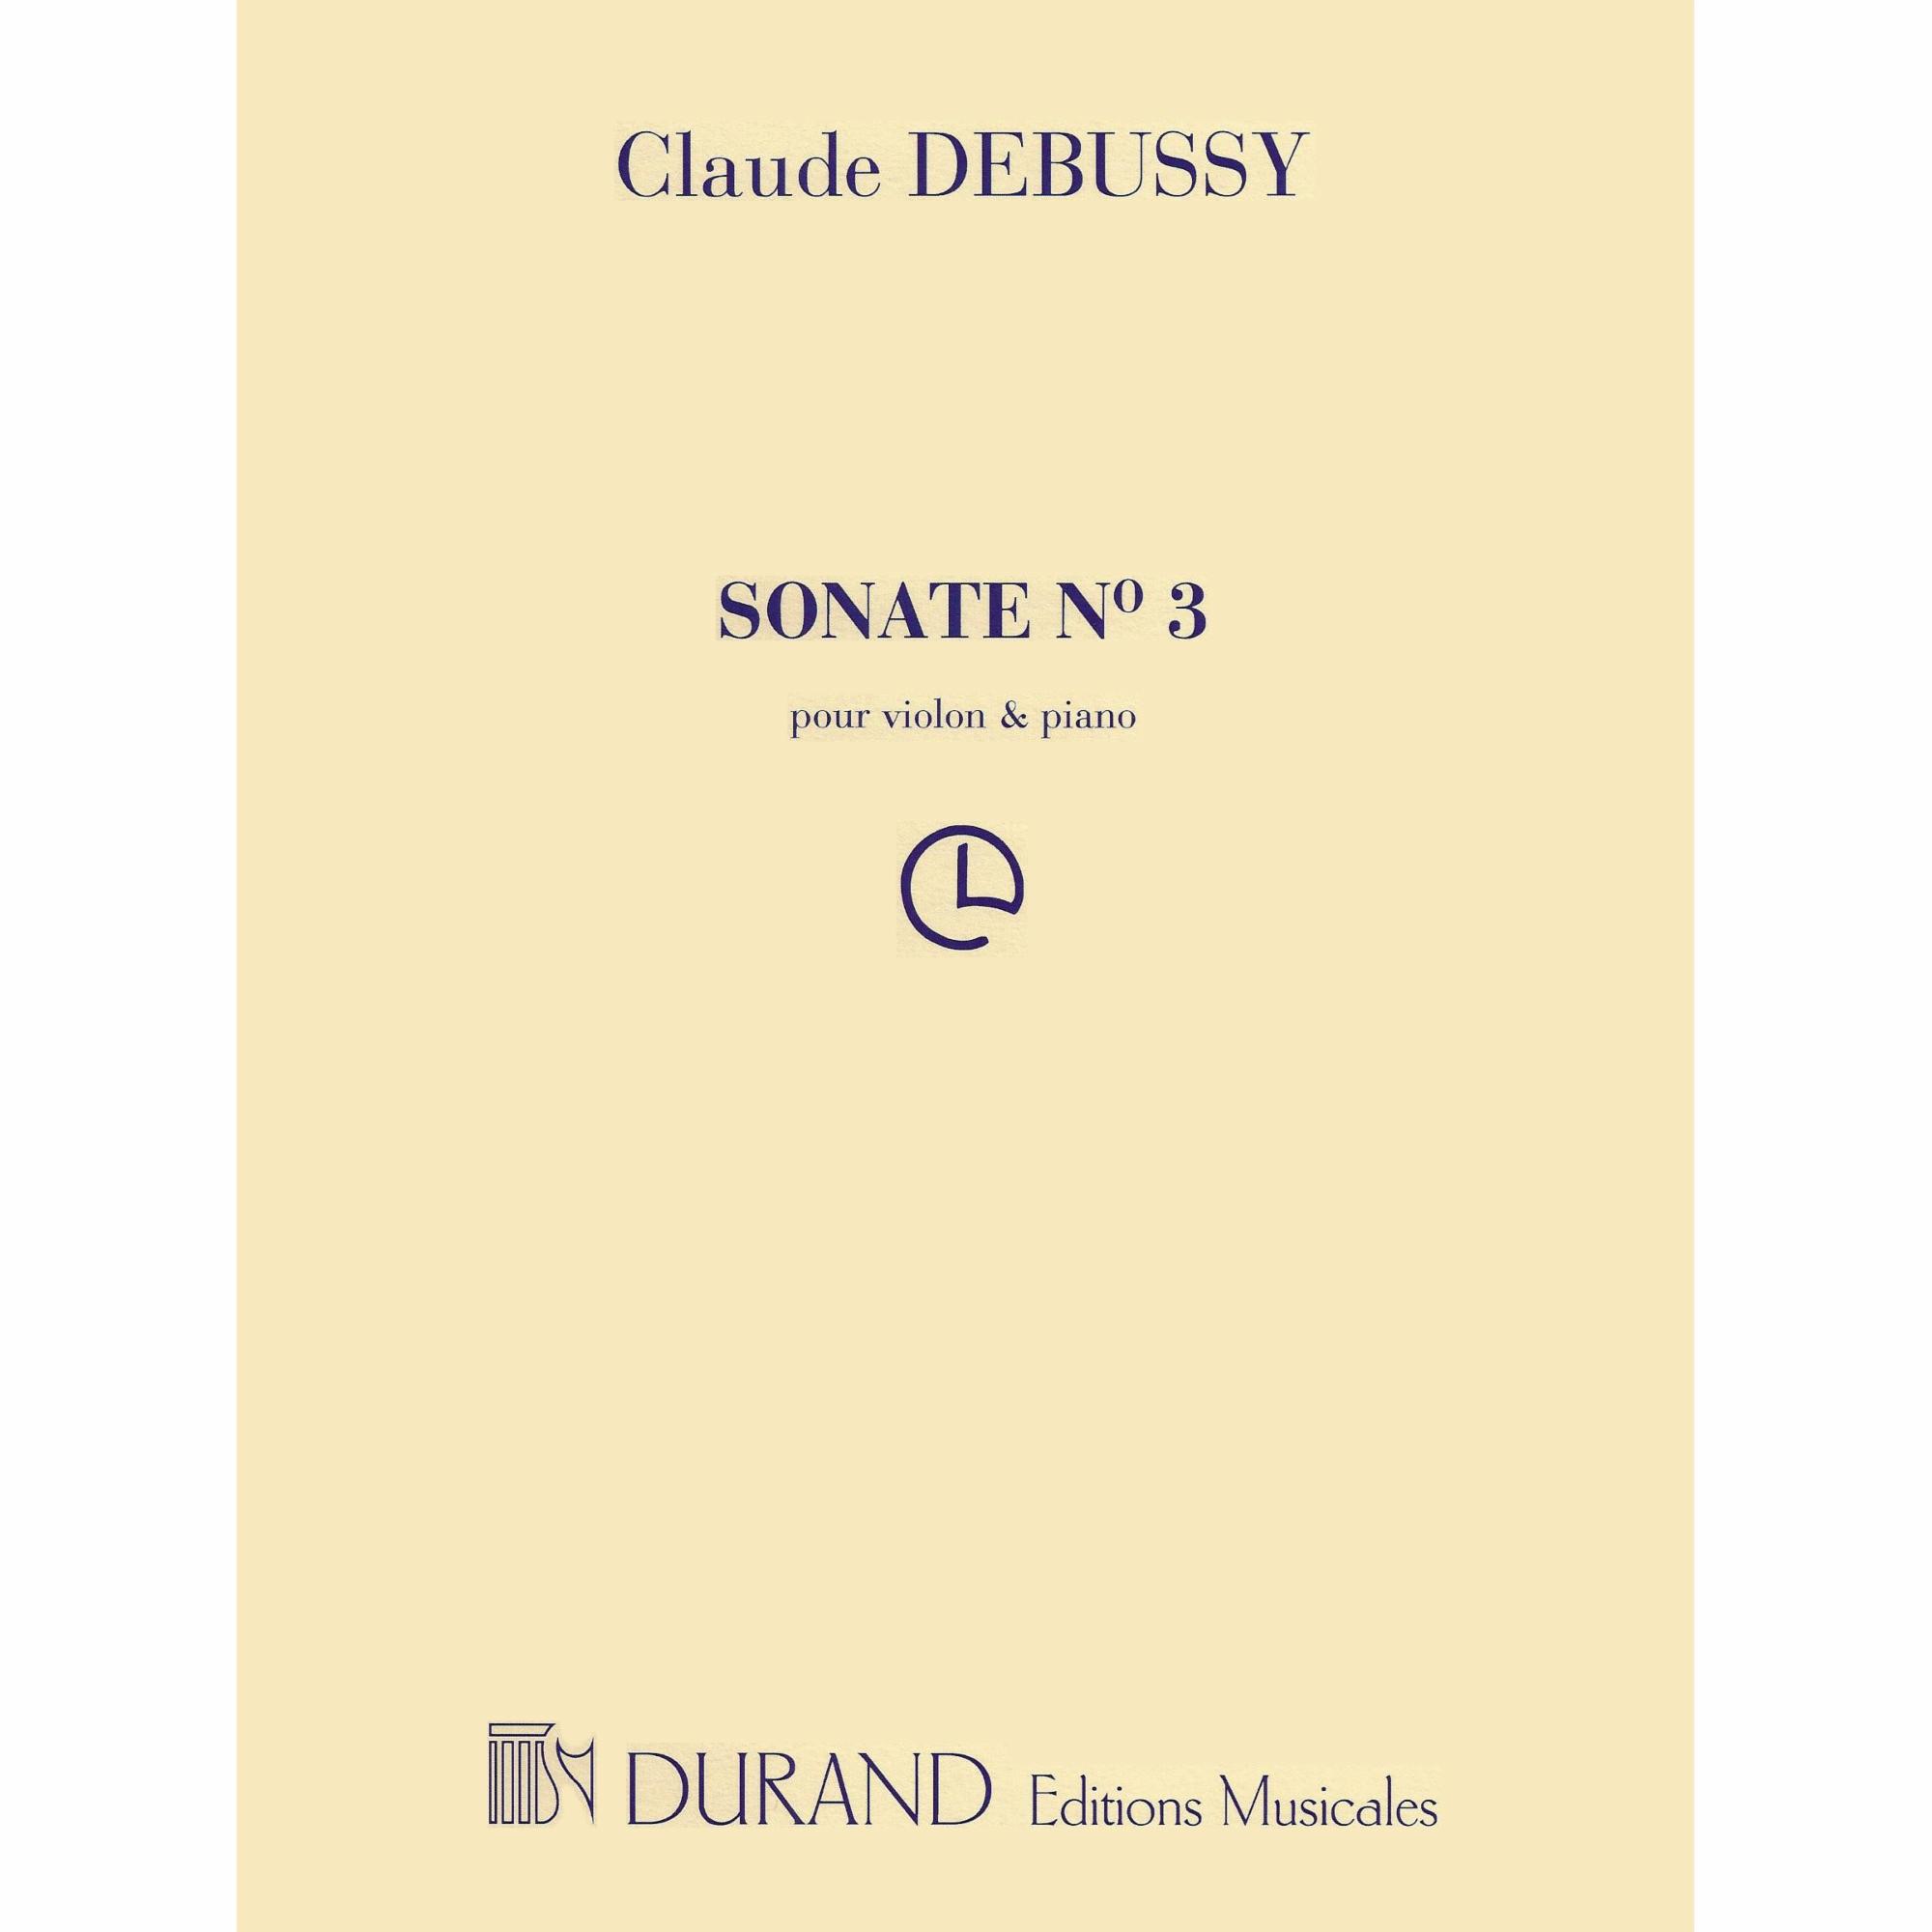 Debussy -- Sonata No. 3 for Violin and Piano